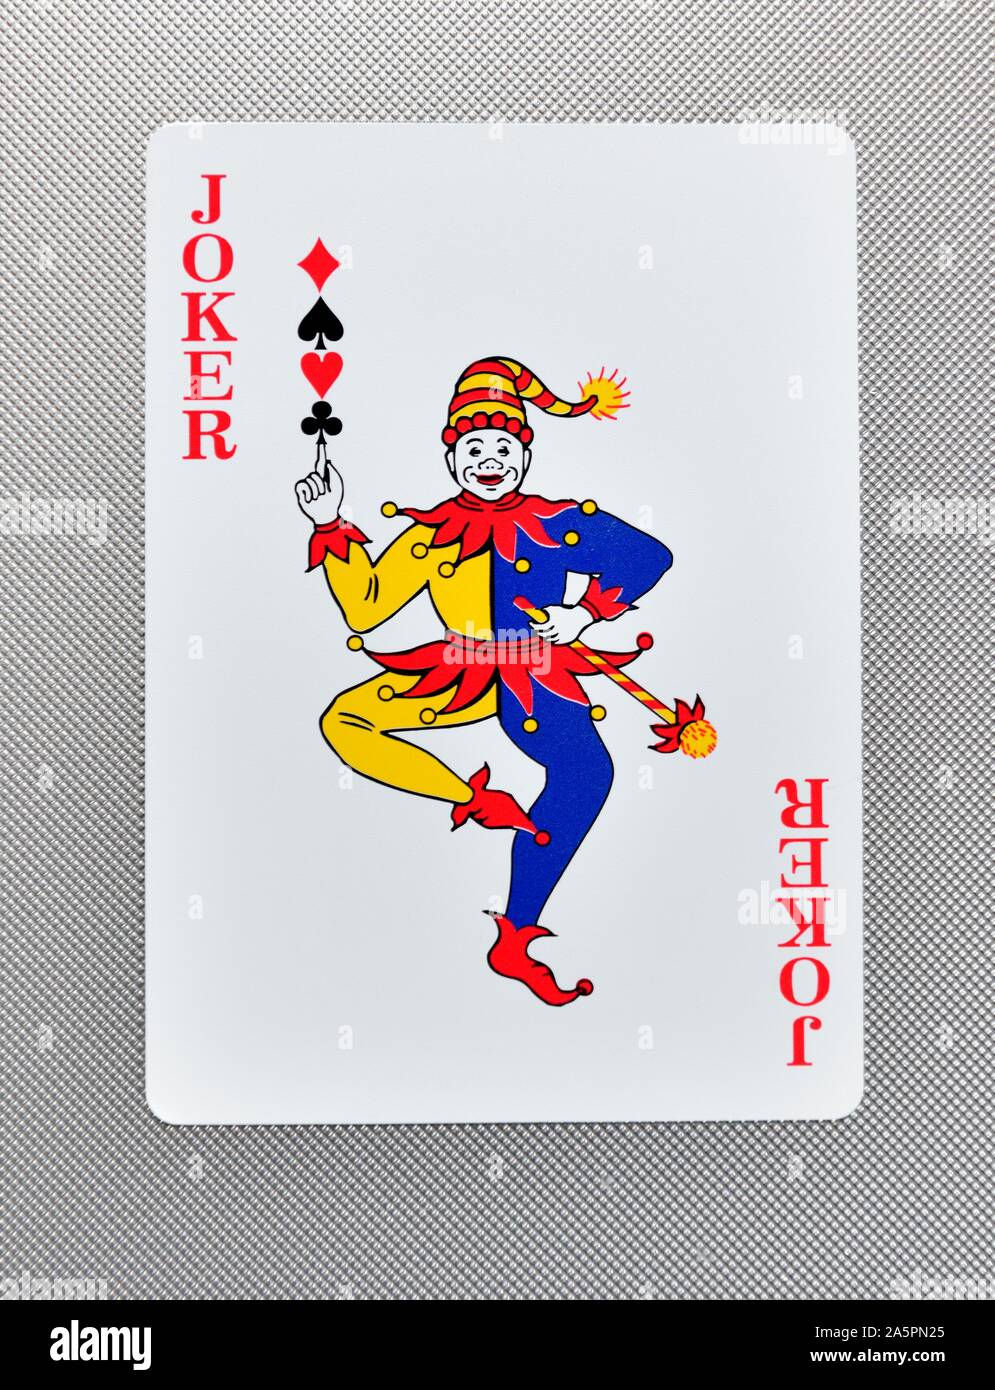 Joker playing card wallpaper  2560x1600  6991  WallpaperUP